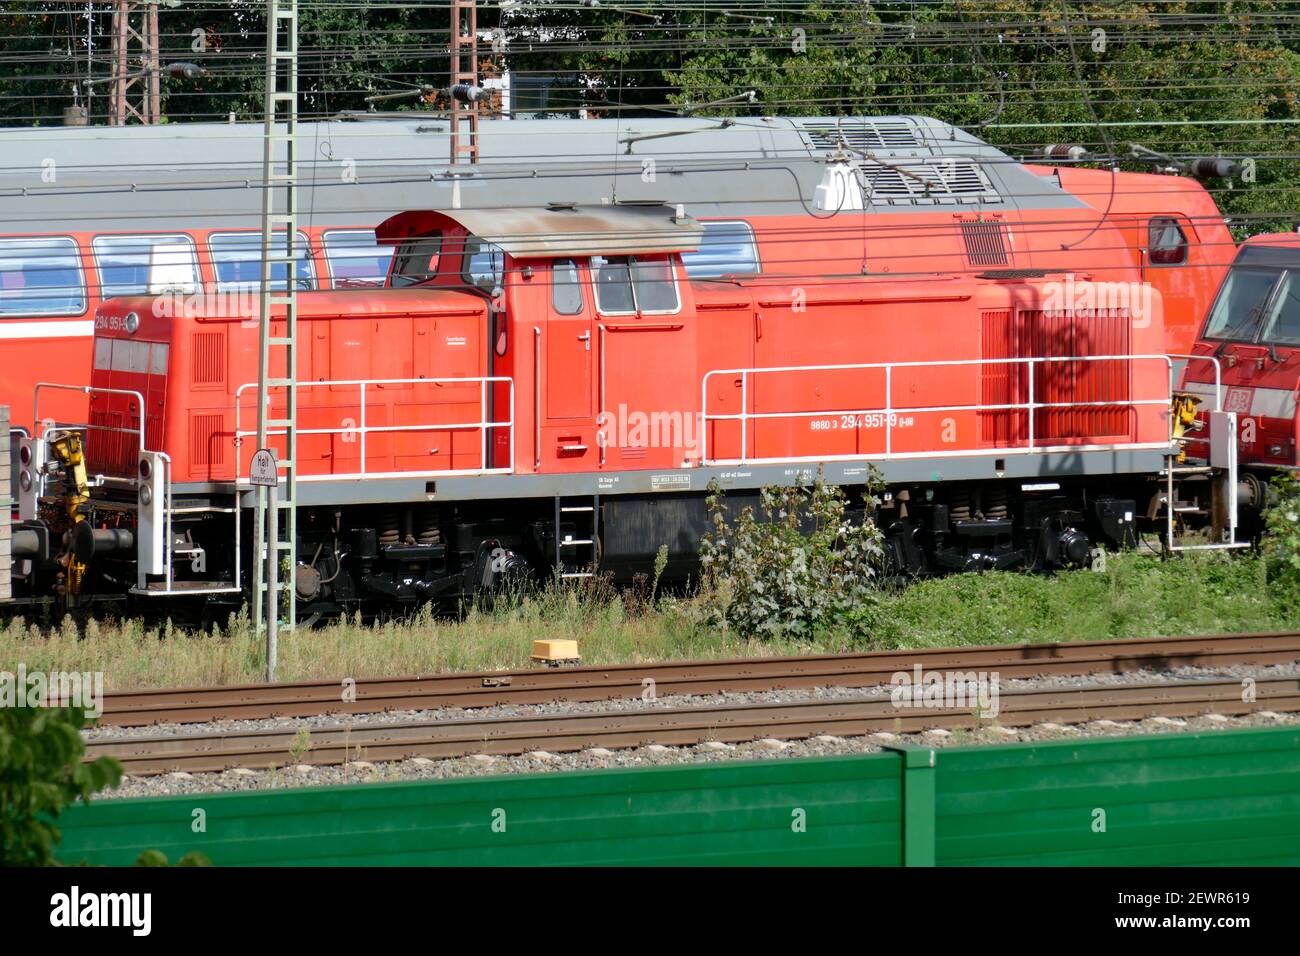 Locomotive diesel rouge, trains locaux, installations ferroviaires, barrière verte contre le bruit , Brême, Allemagne Banque D'Images